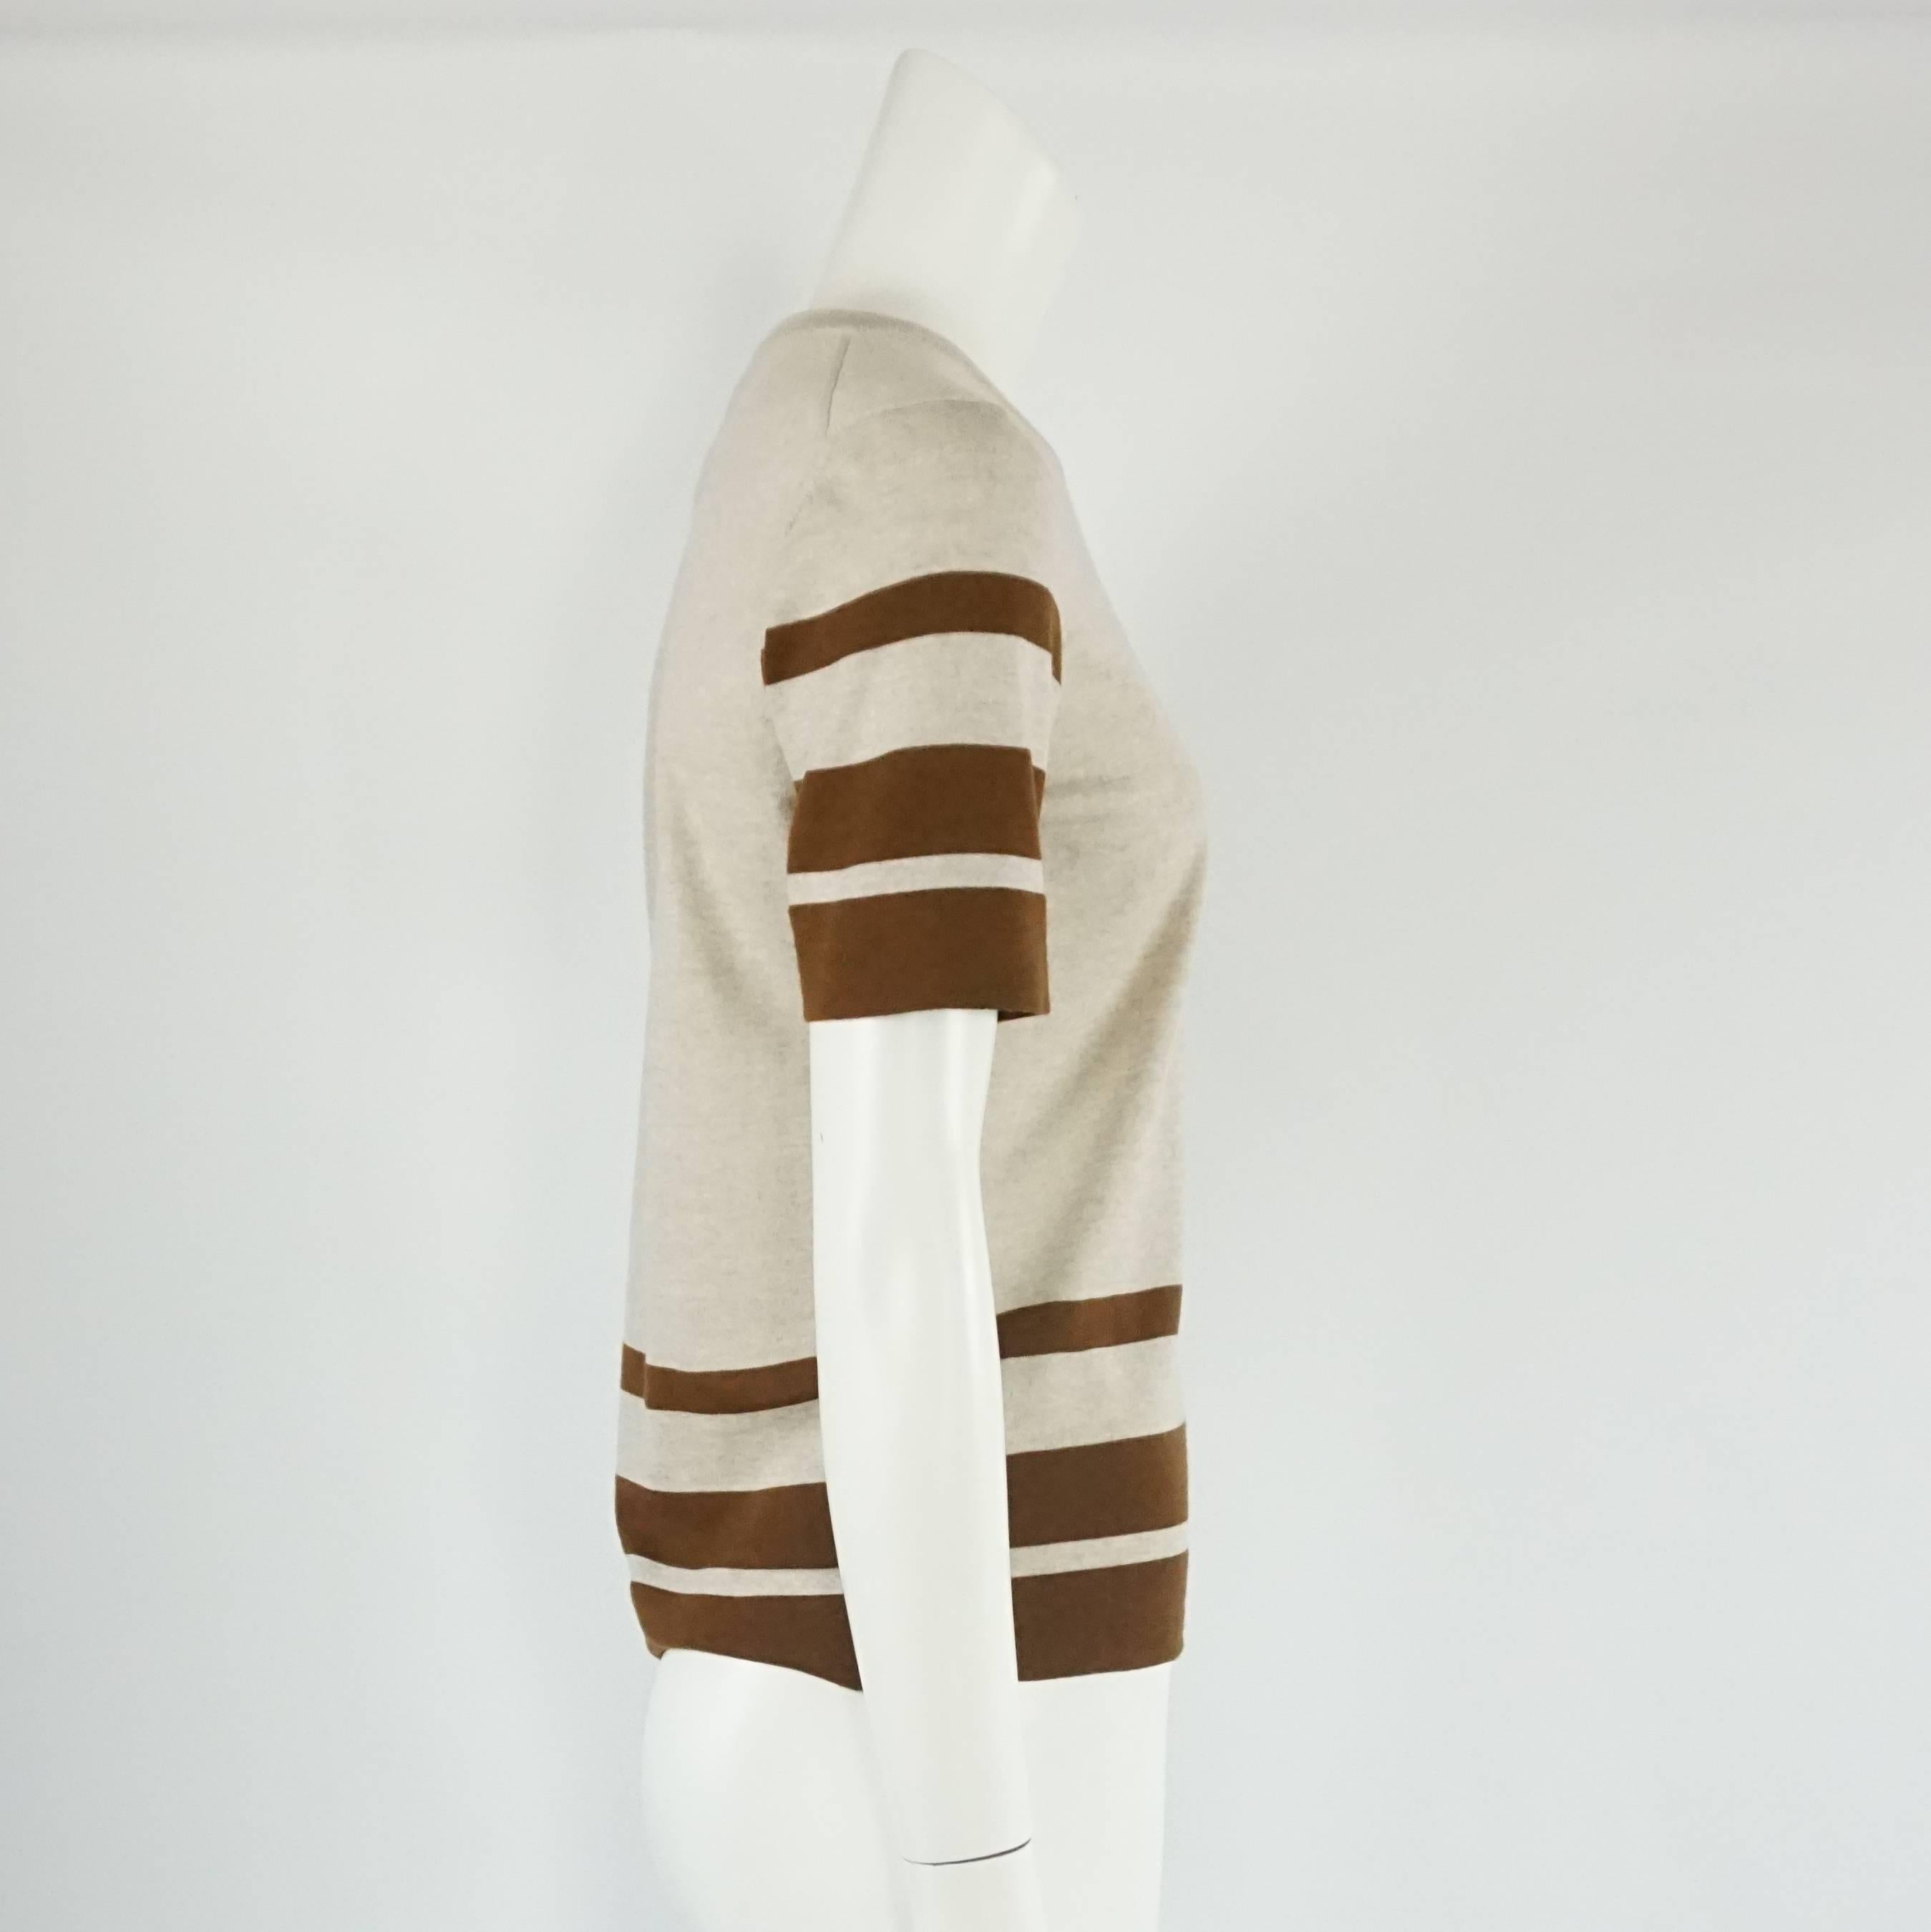 Dieses Oberteil von Salvatore Ferragamo aus grauer und brauner Schurwolle wirkt klassisch-equestrianisch. Die Bluse hat einen Rundhalsausschnitt, Streifen an den Ärmeln und am unteren Rand und ein kleines Ferragamo-Metalllogo am unteren Rand. Das